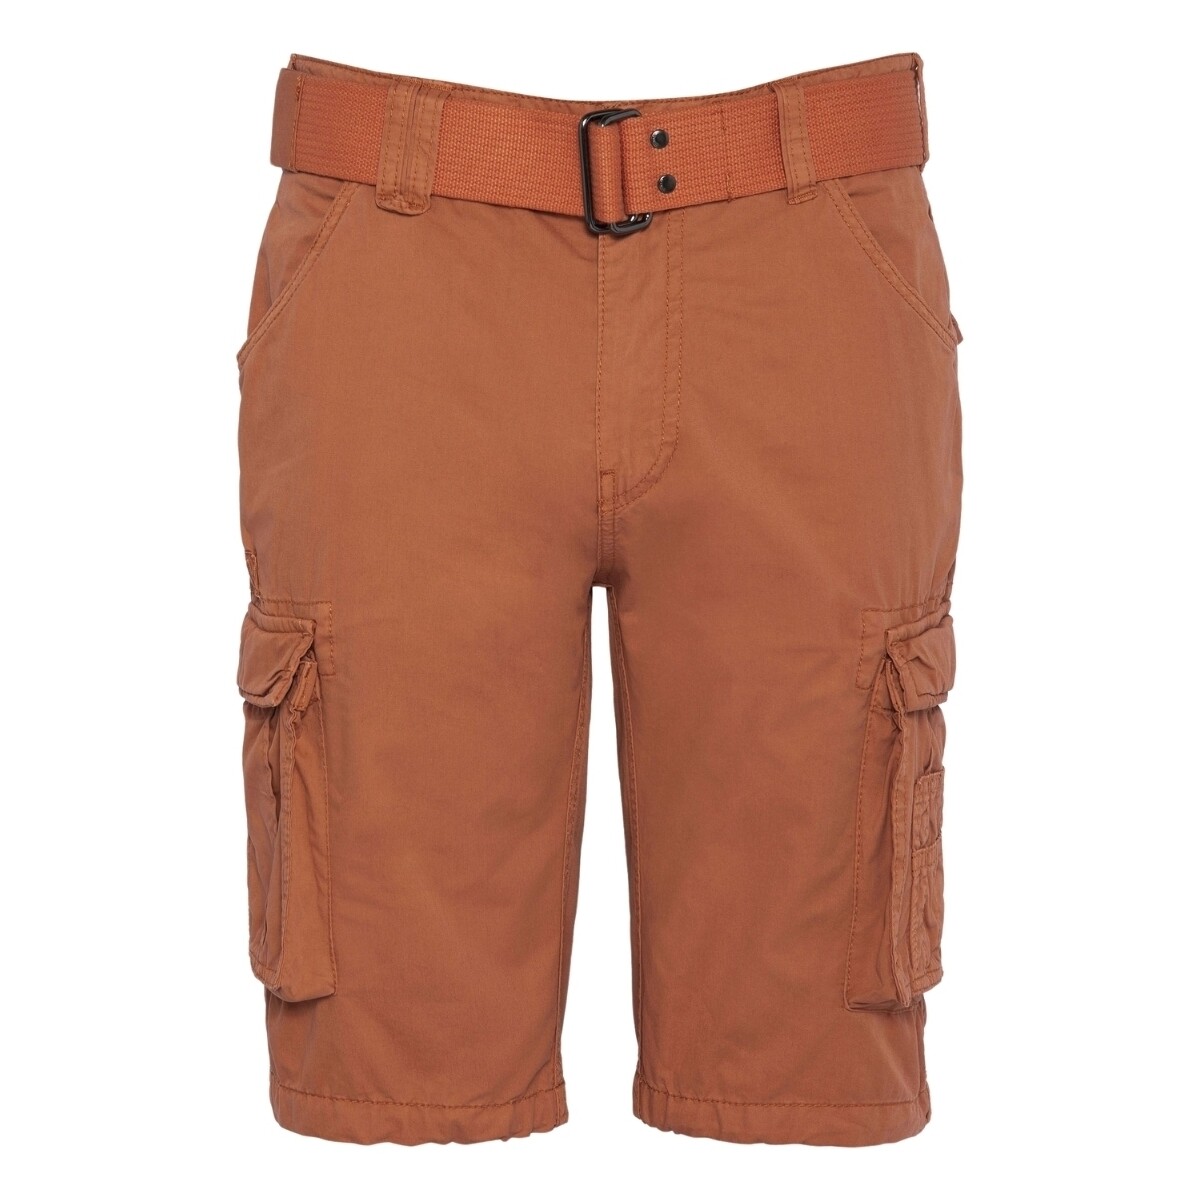 Vêtements Homme Shorts / Bermudas Schott Short cargo  Ranger Ref 52975 Orange Orange